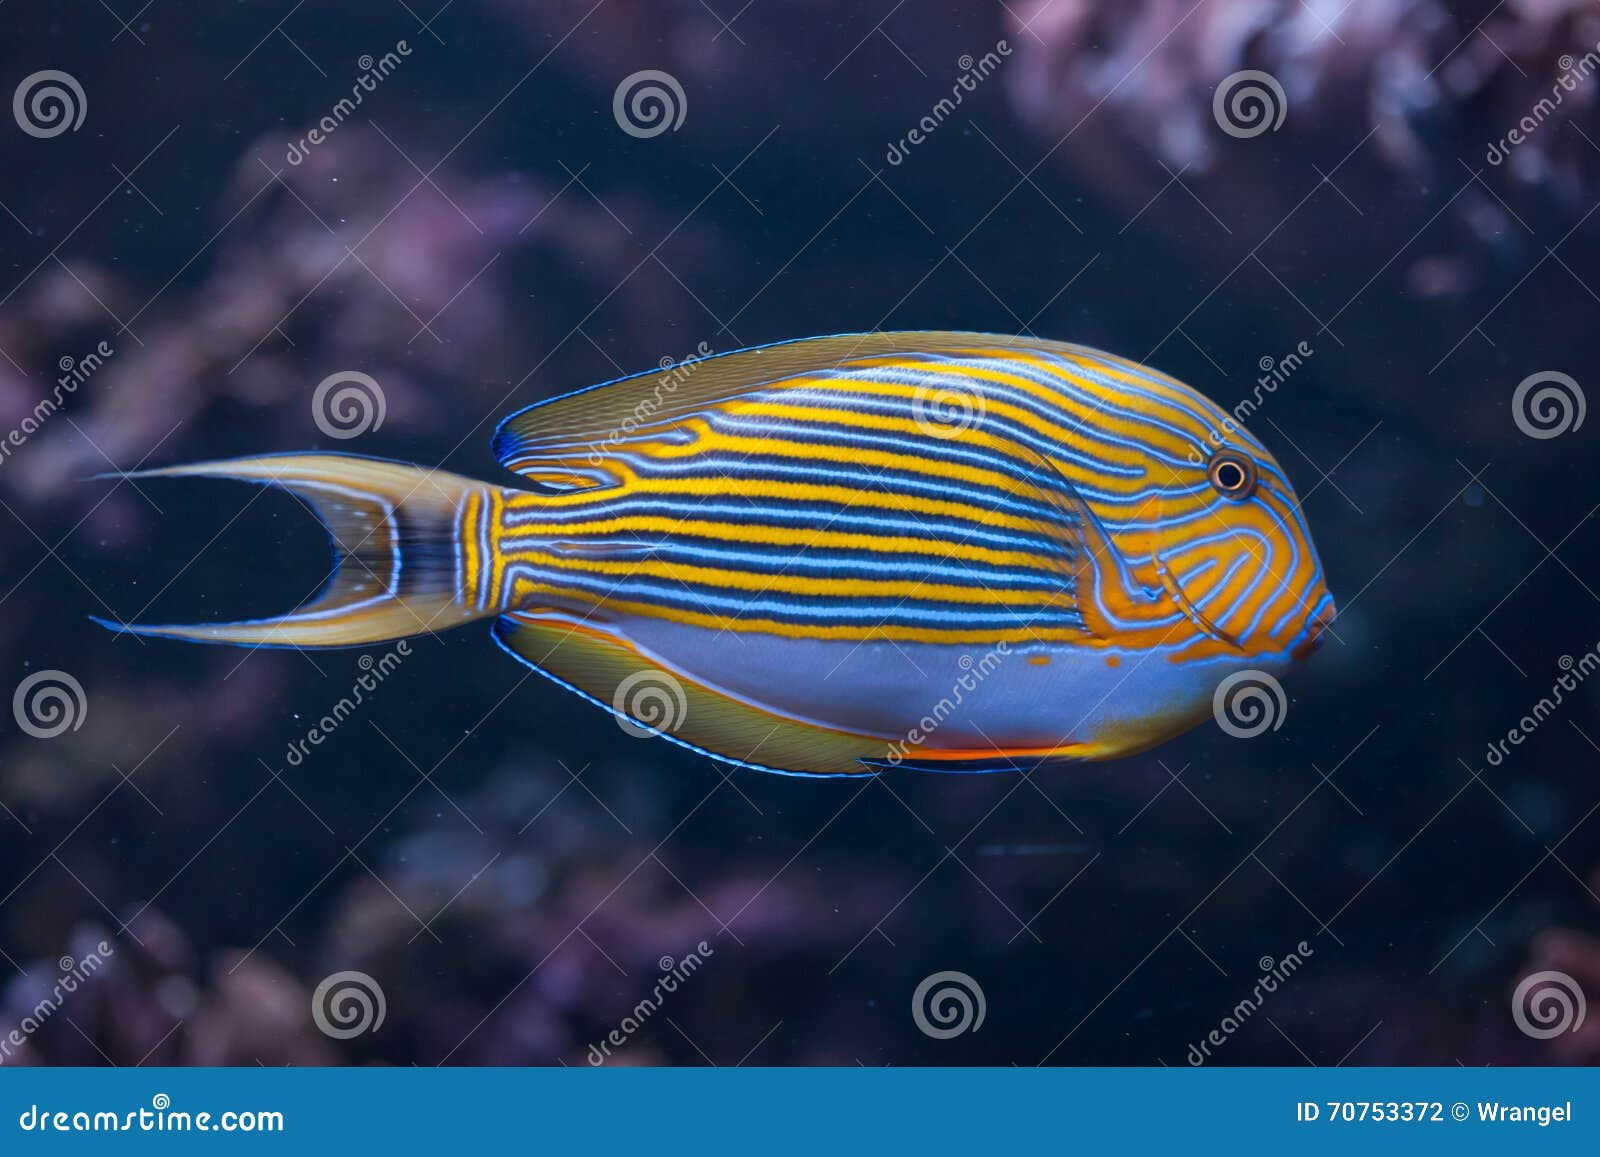 blue banded surgeonfish (acanthurus lineatus).